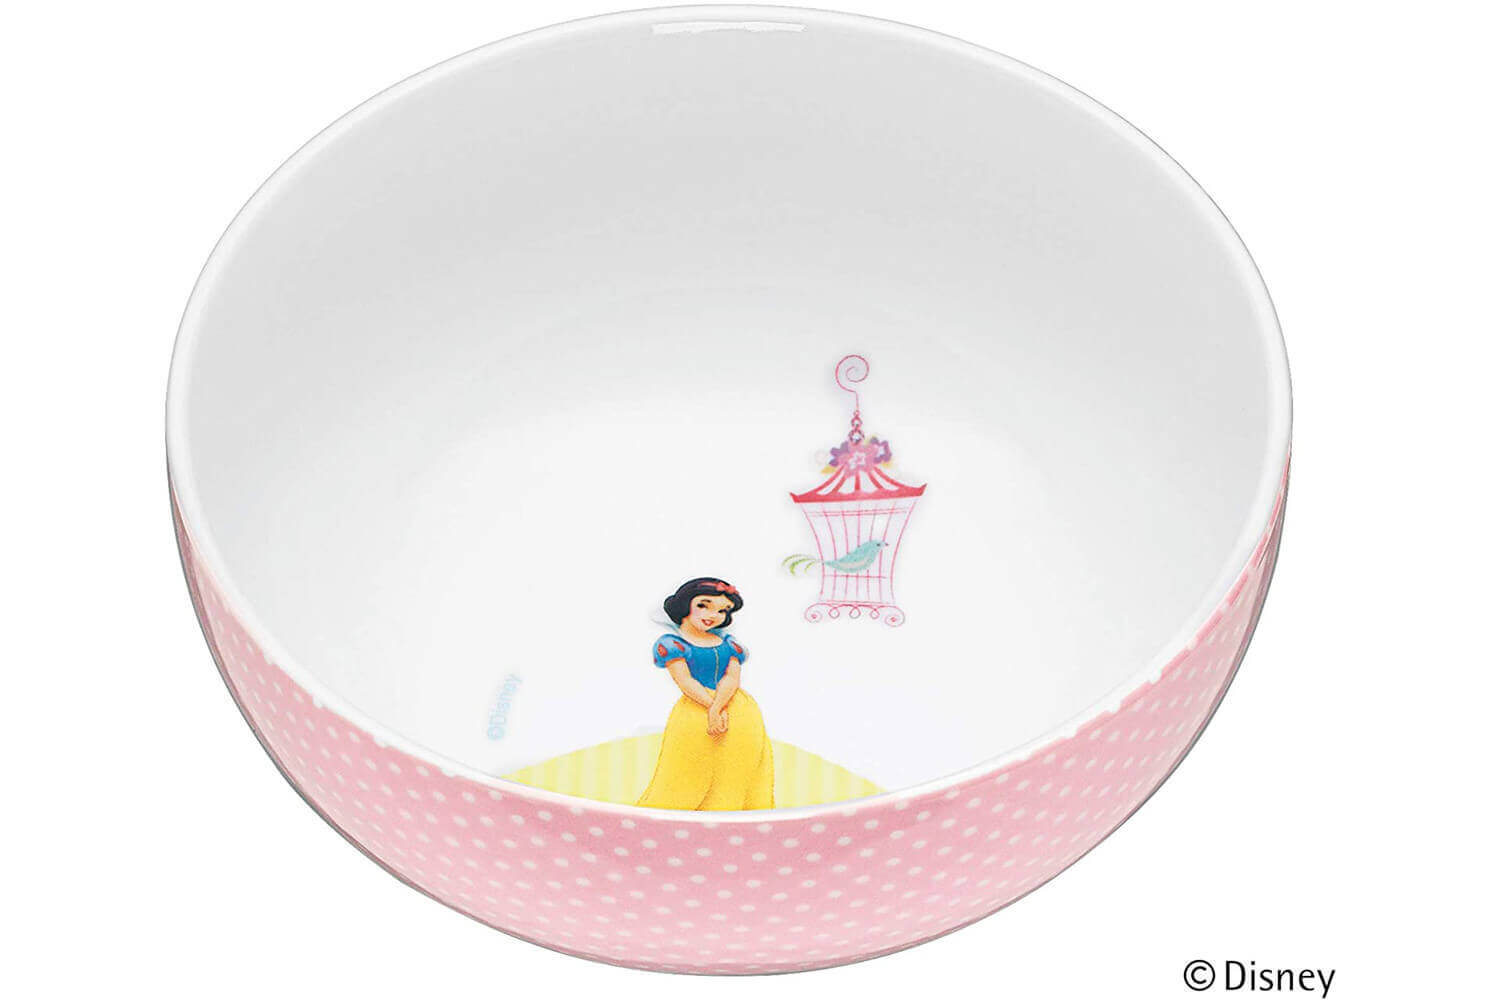 Service vaisselle Disney WMF 6 pièces décor princesses